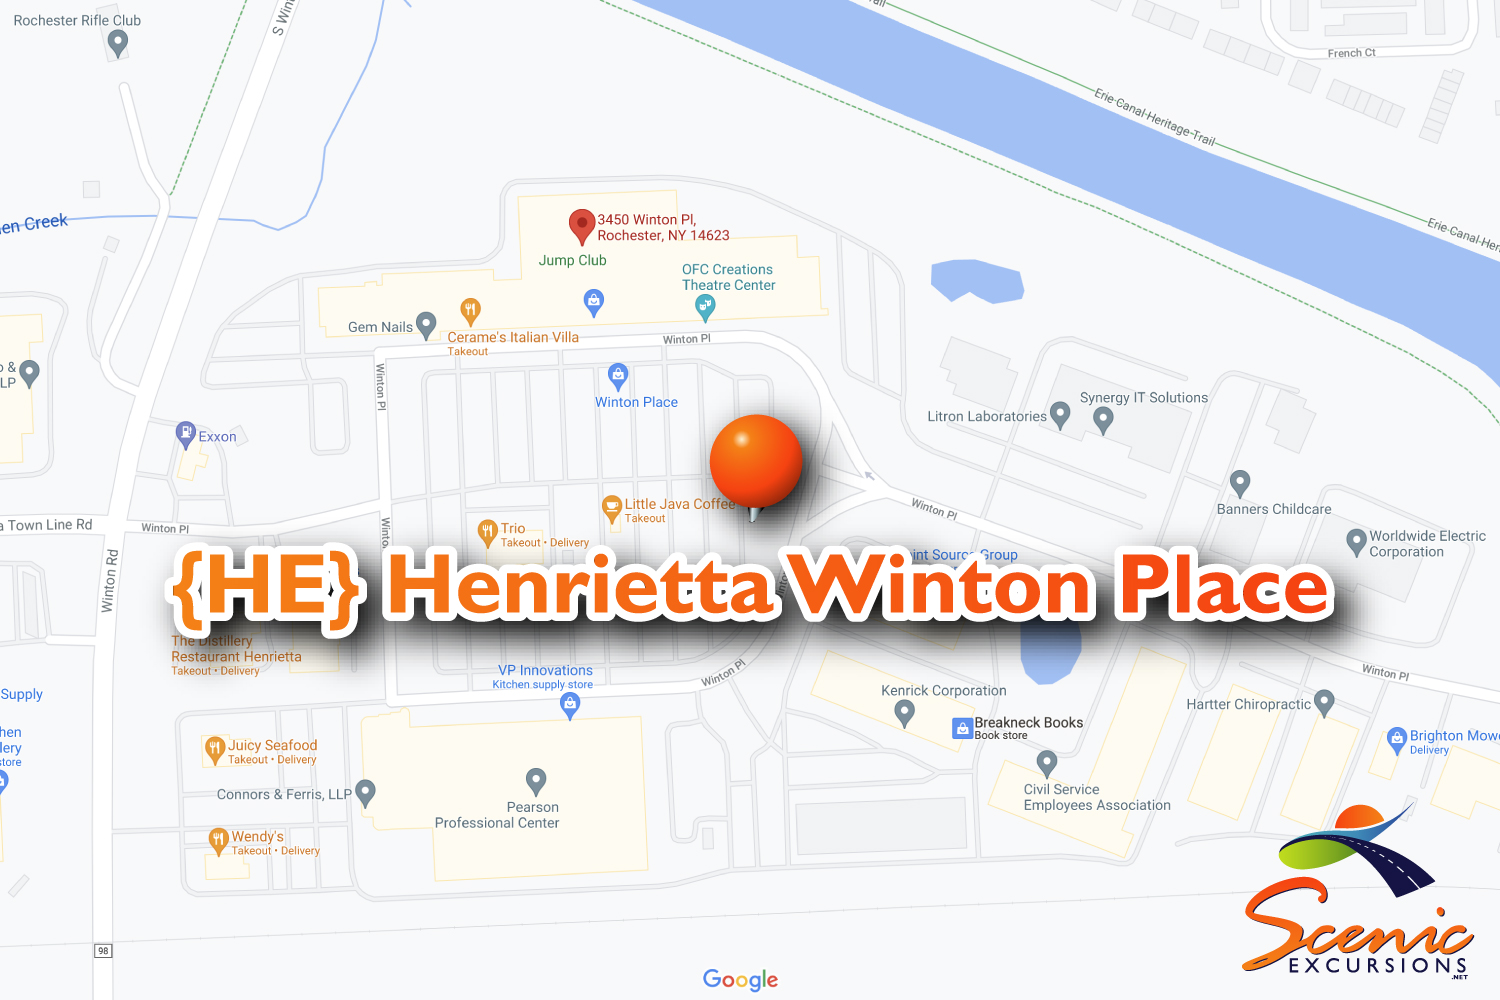 {HE} Henrietta Winton Place